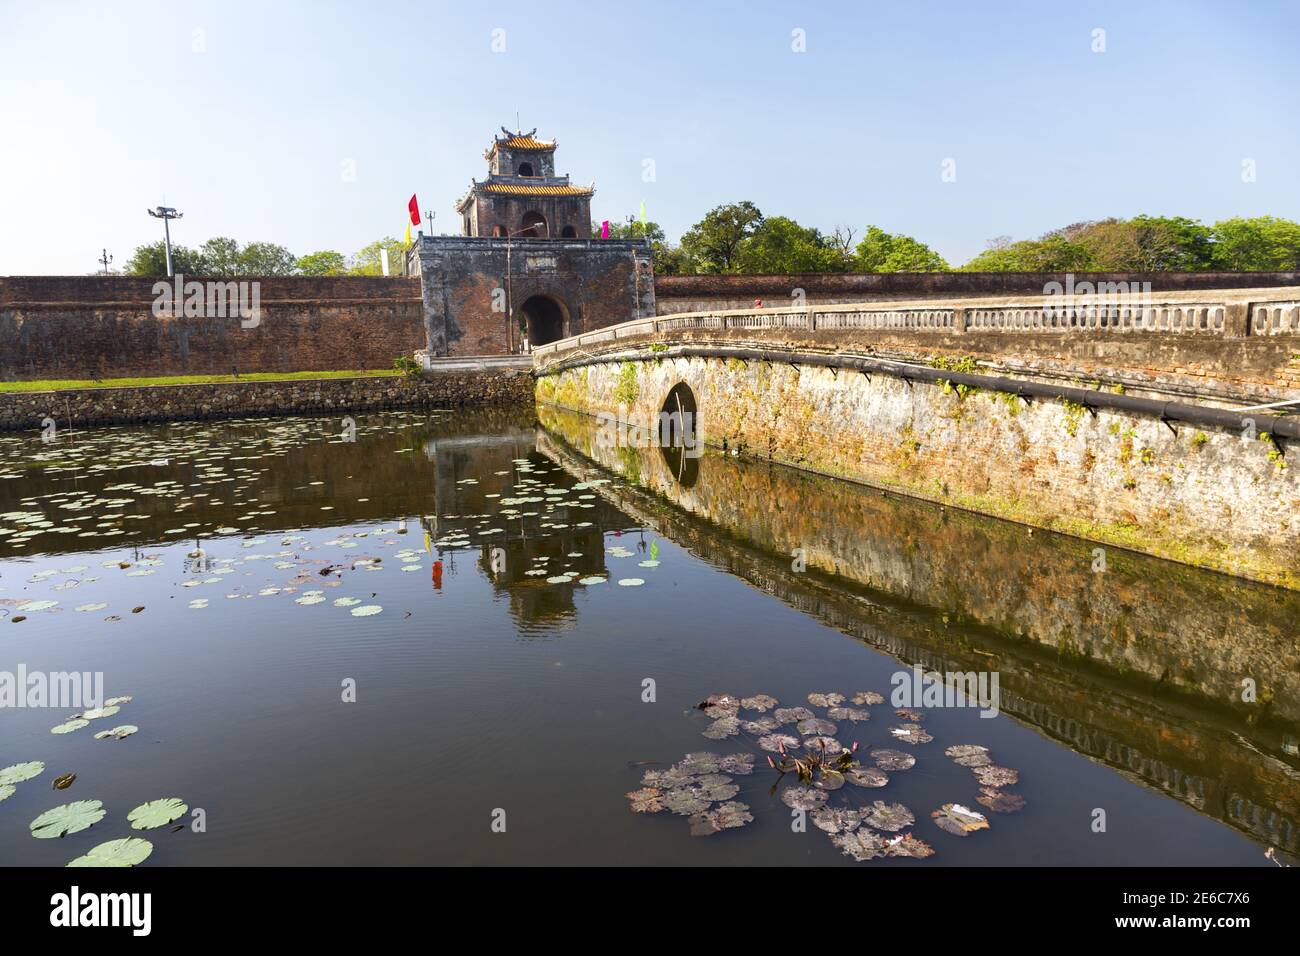 Enceinte fortifiée et lagune d'eau du Palais impérial historique Cité interdite Citadelle à Hue, Vietnam Banque D'Images